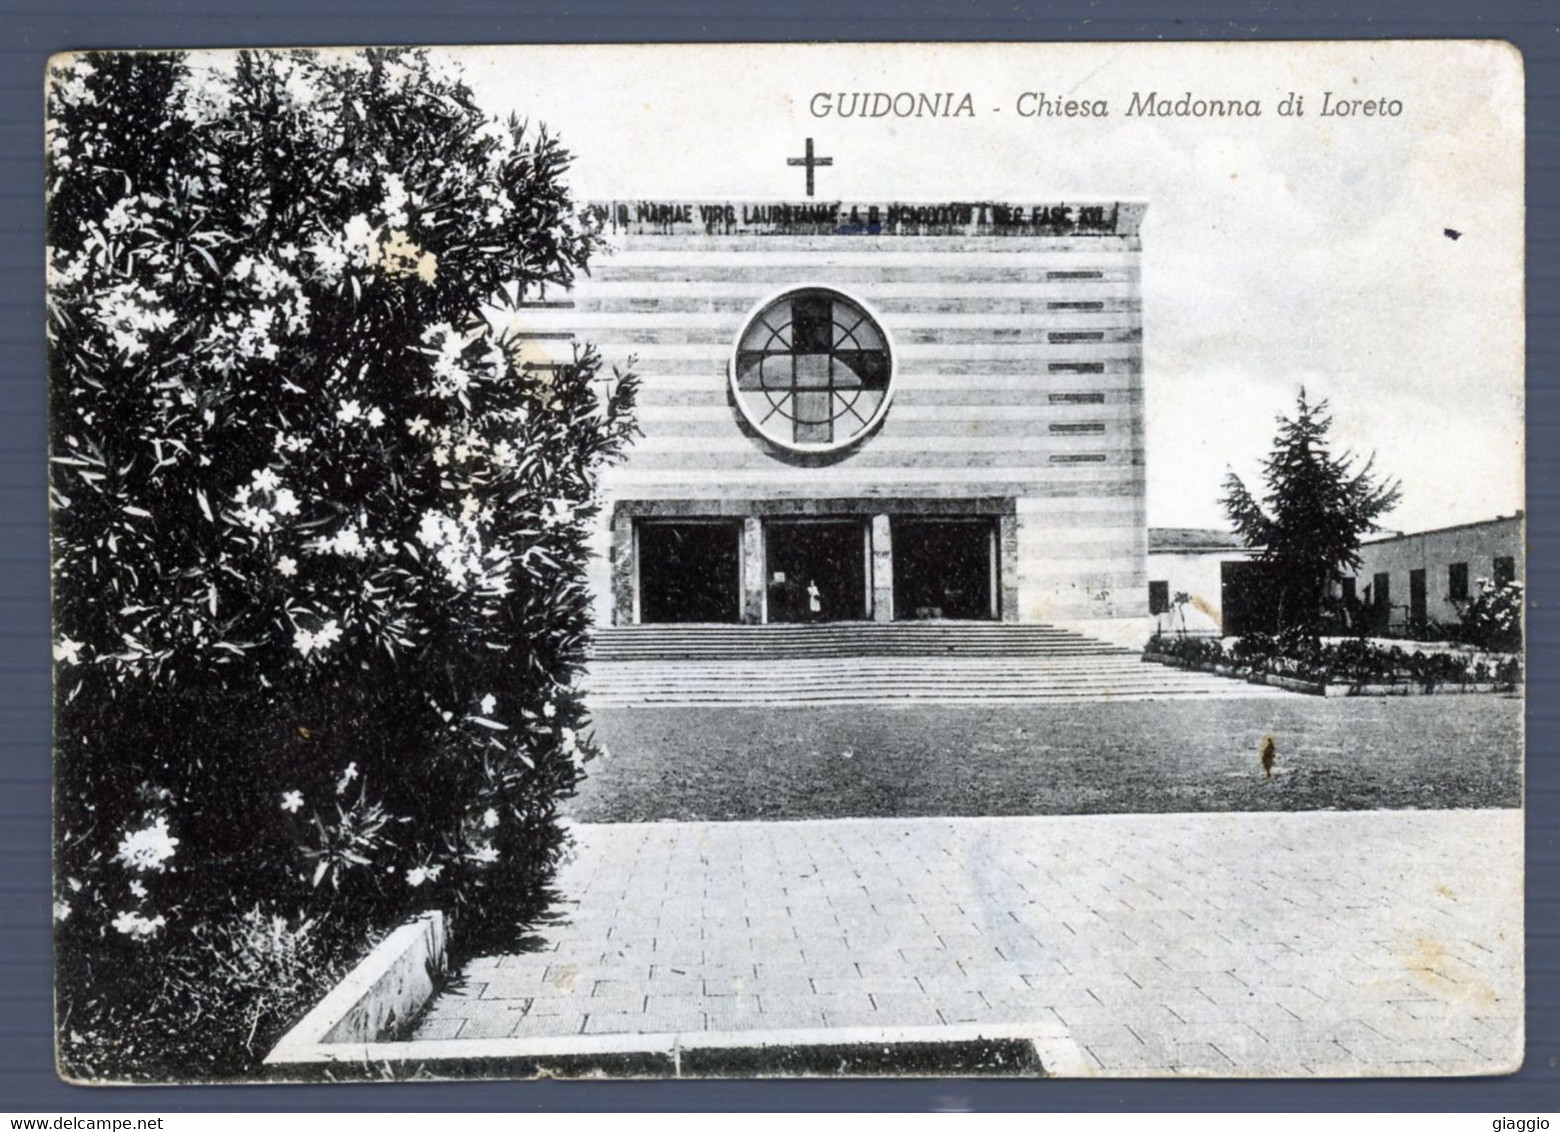 °°° Cartolina - Guidonia Chiesa Madonna Di Loreto Viaggiata °°° - Guidonia Montecelio